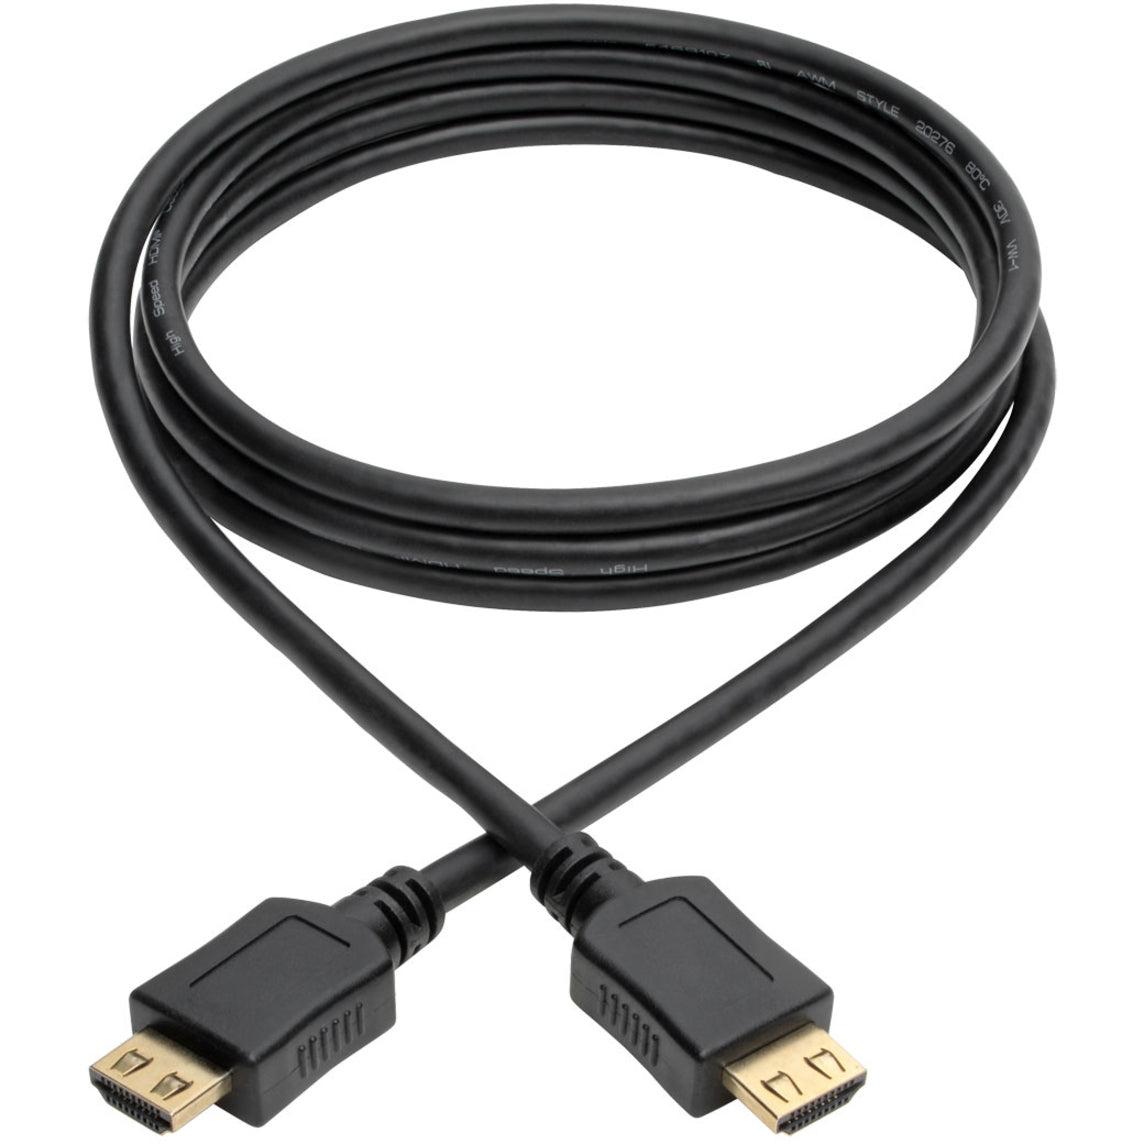 تريب لايت سلك HDMI عالي السرعة ، قطر 6 أقدام ، مع موصلات متصاعدة - 4K ، أسود